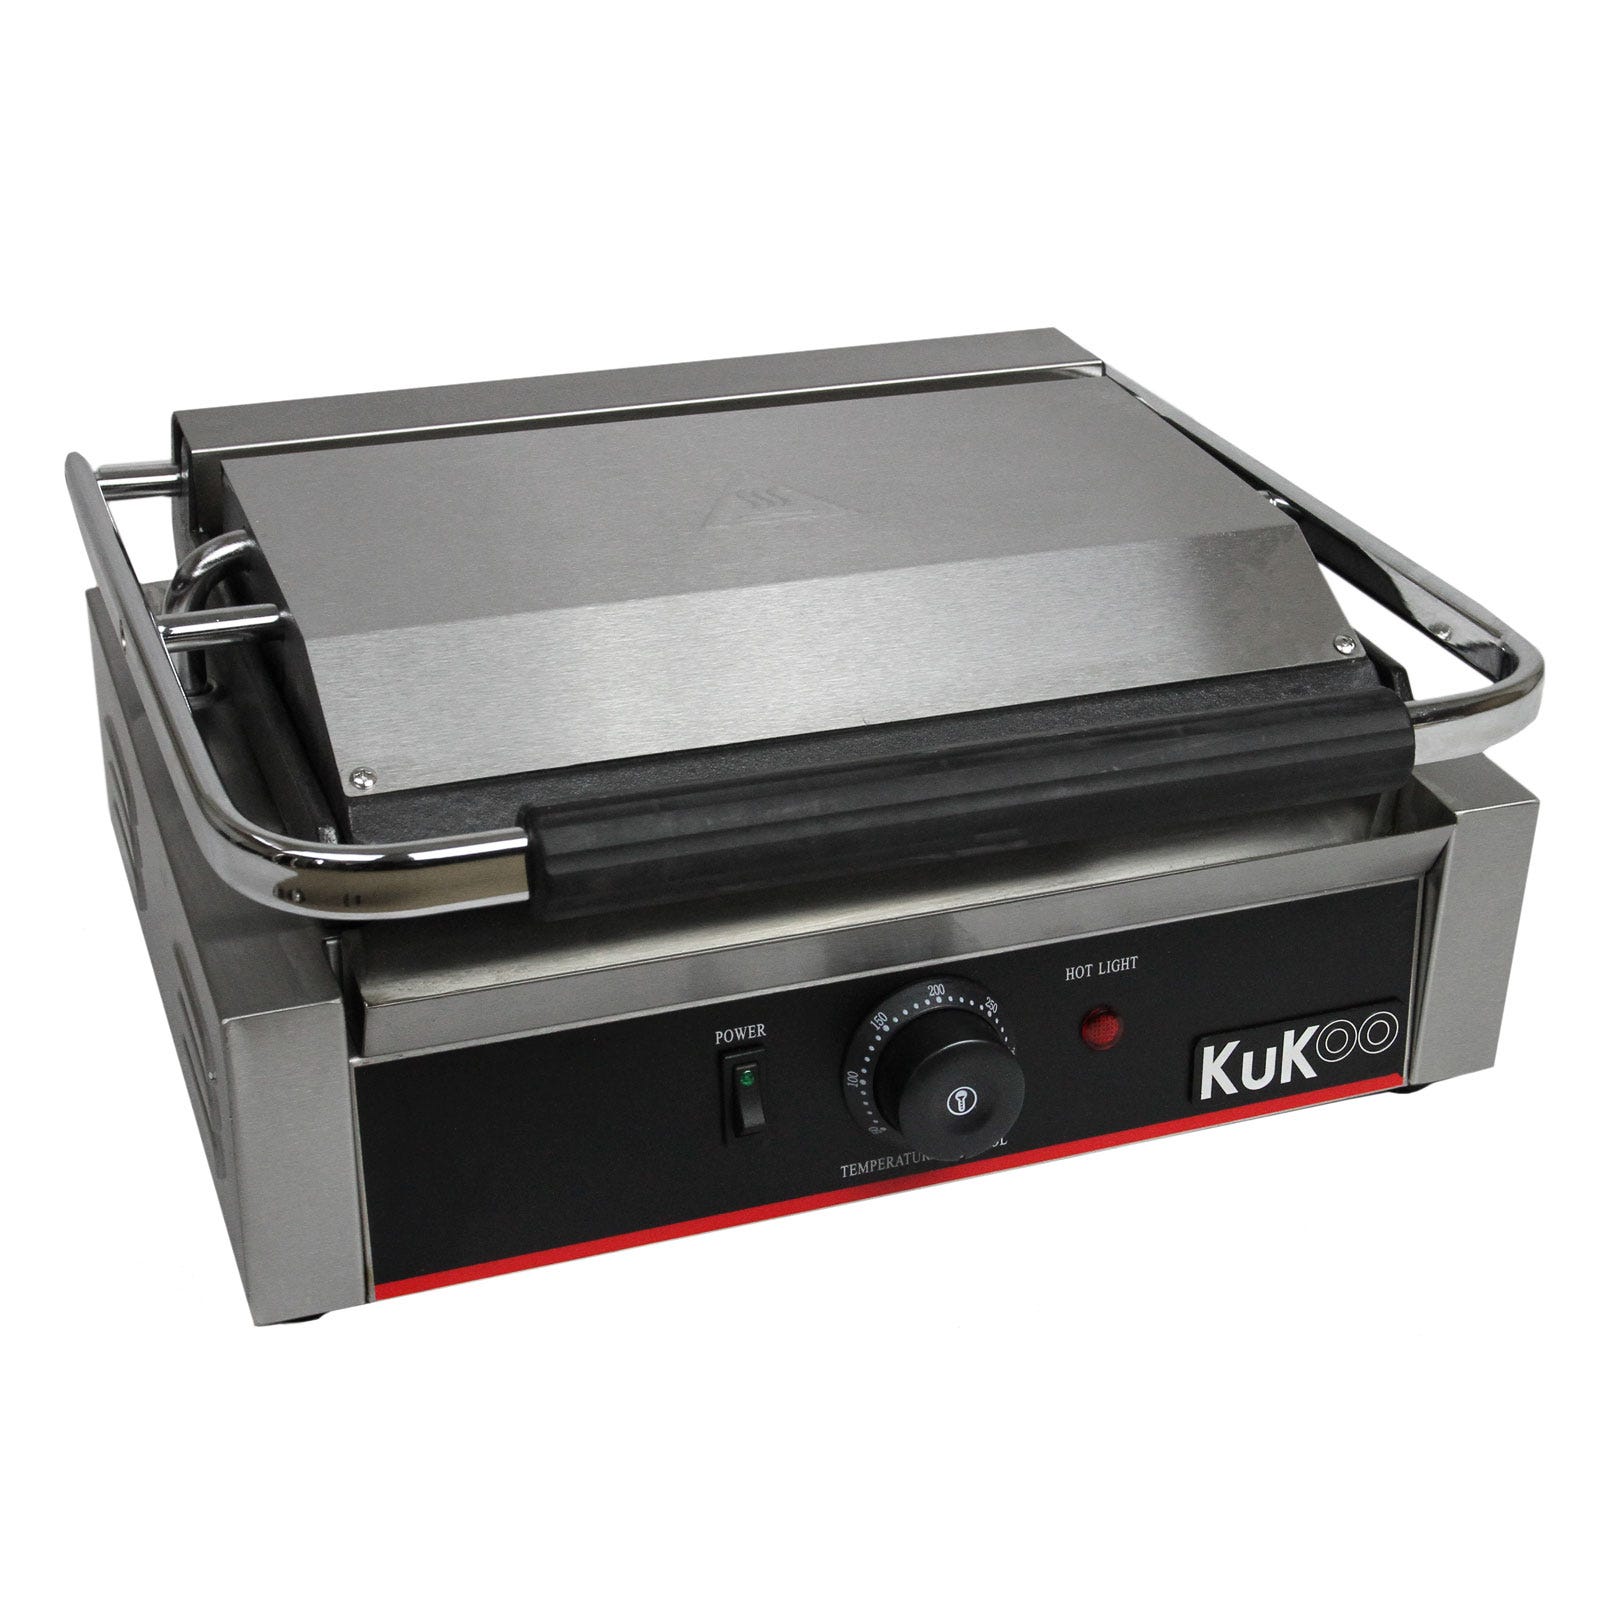 KuKoo - Piastra per Panini Professionale con Griglia Rigata, 2200W,  50-300°C, Acciaio Inox e Griglia in Ghisa per